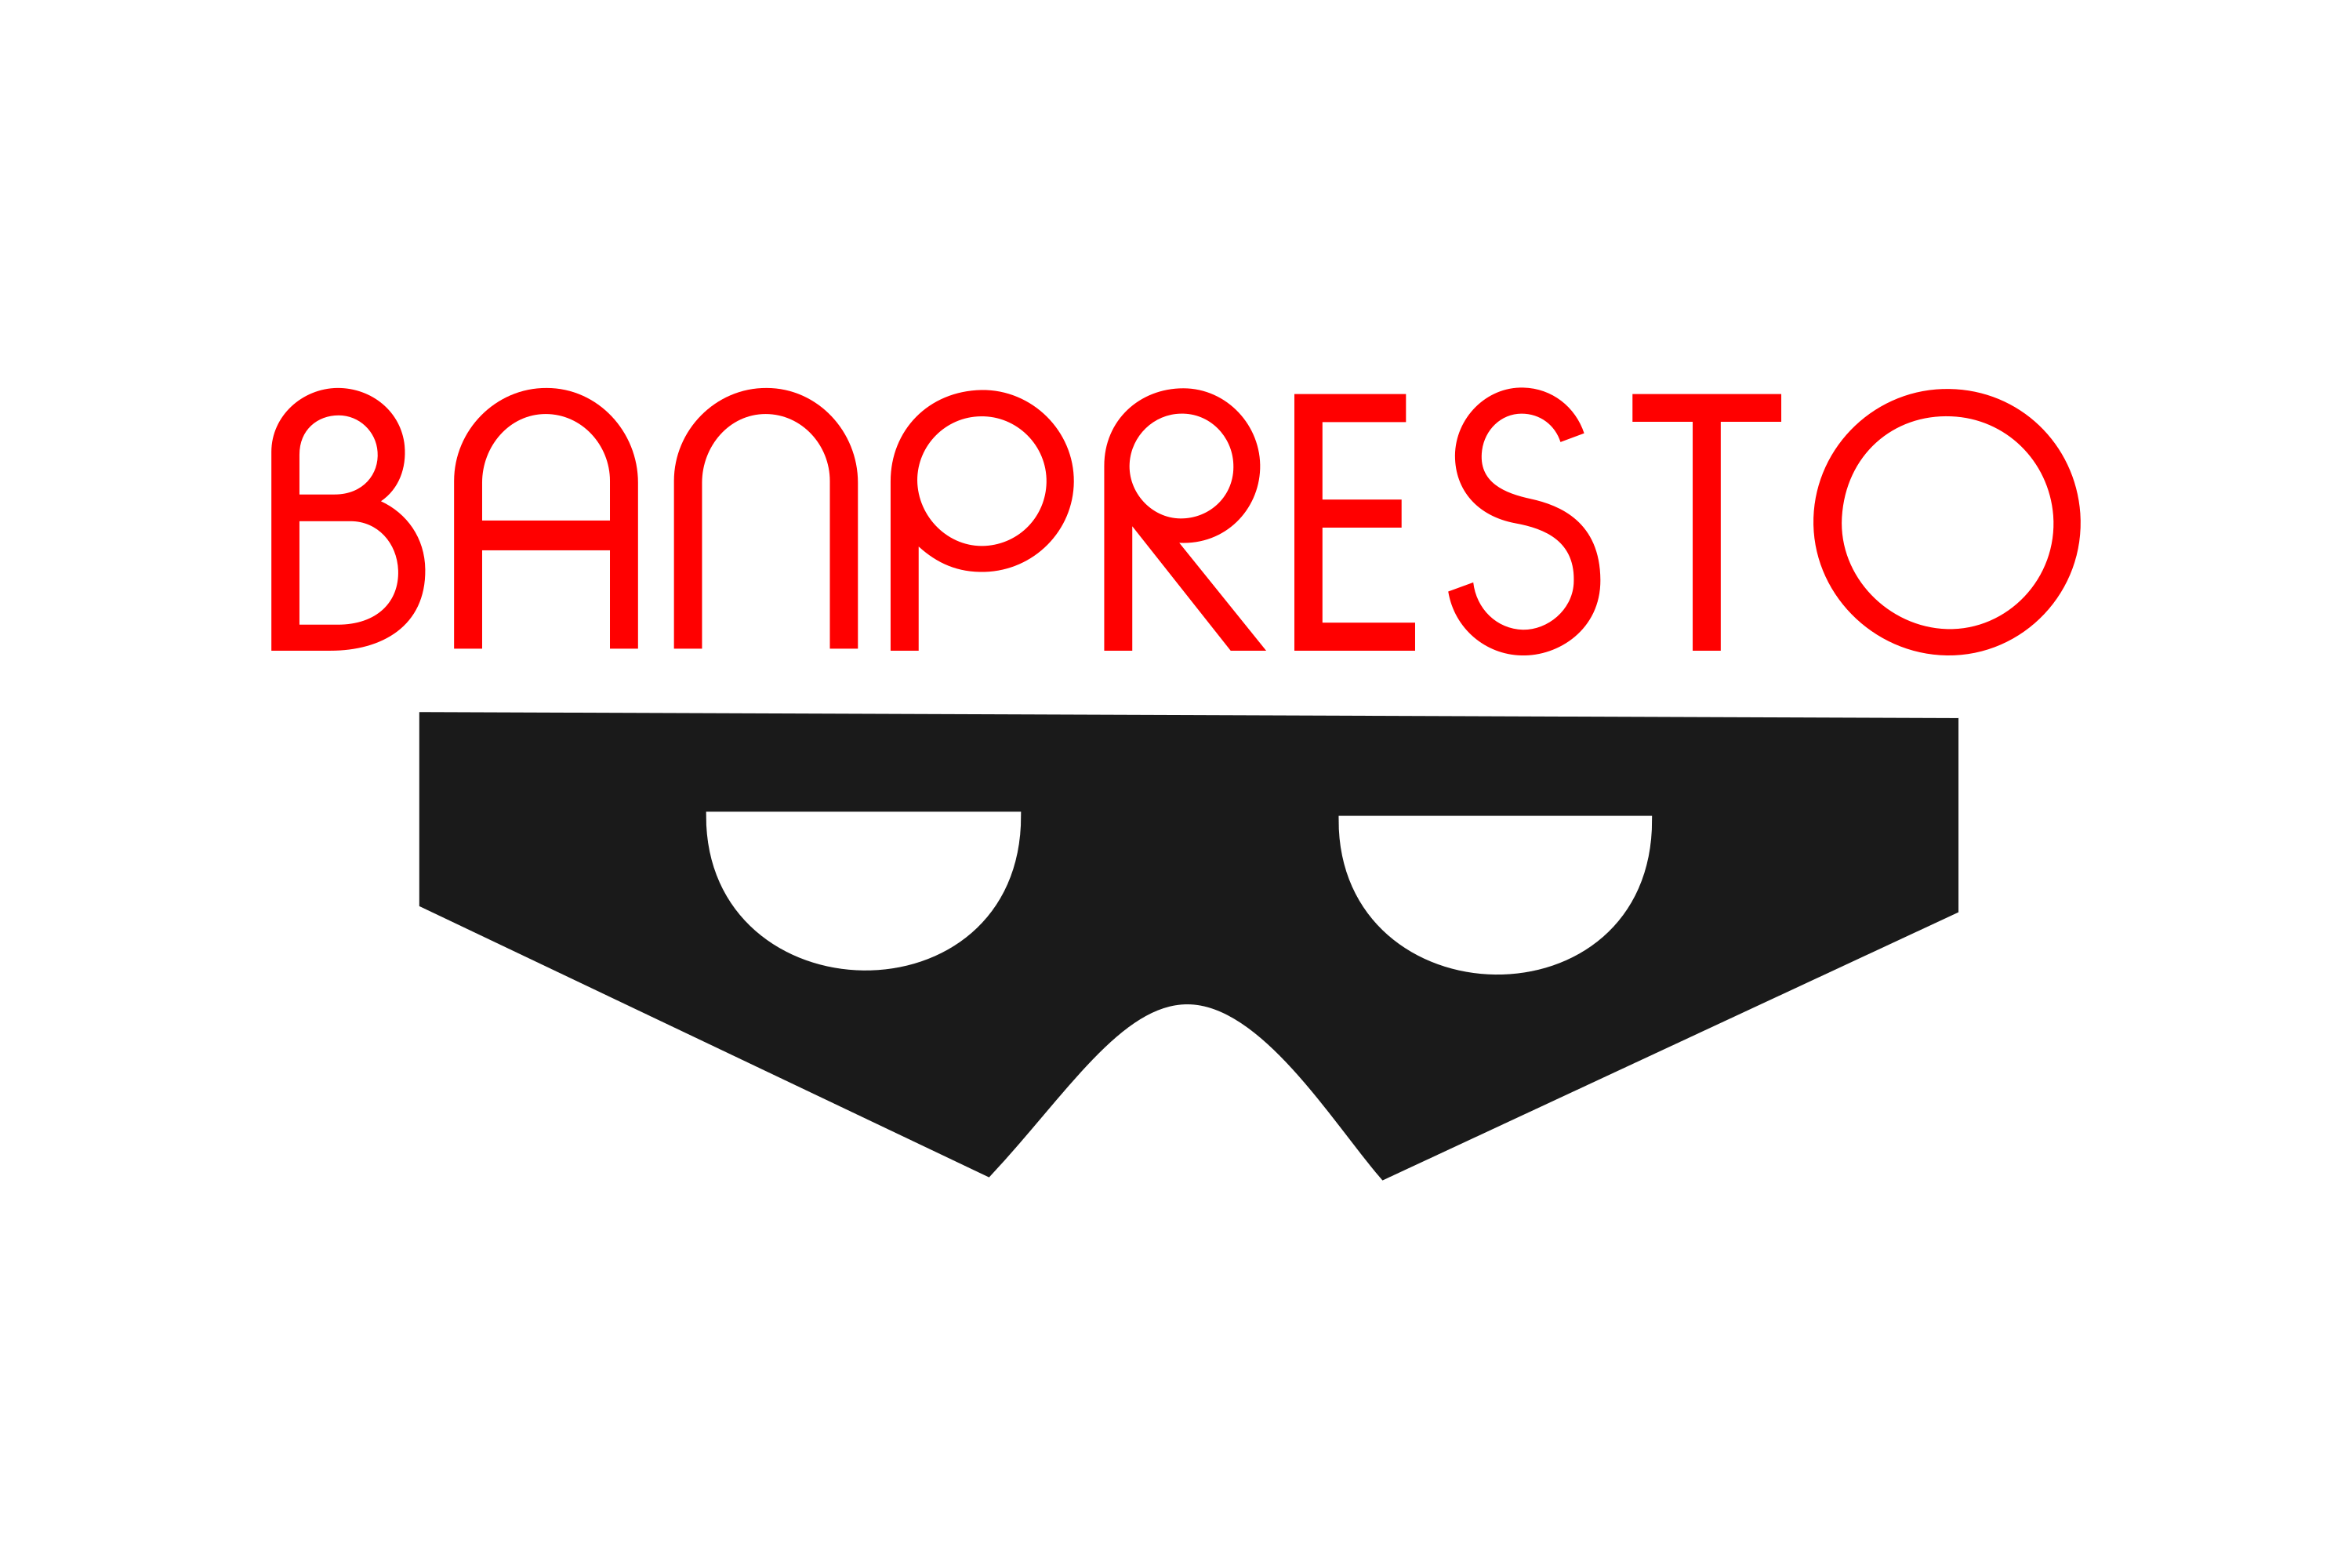 Download Banpresto Logo in SVG Vector or PNG File Format - Logo.wine